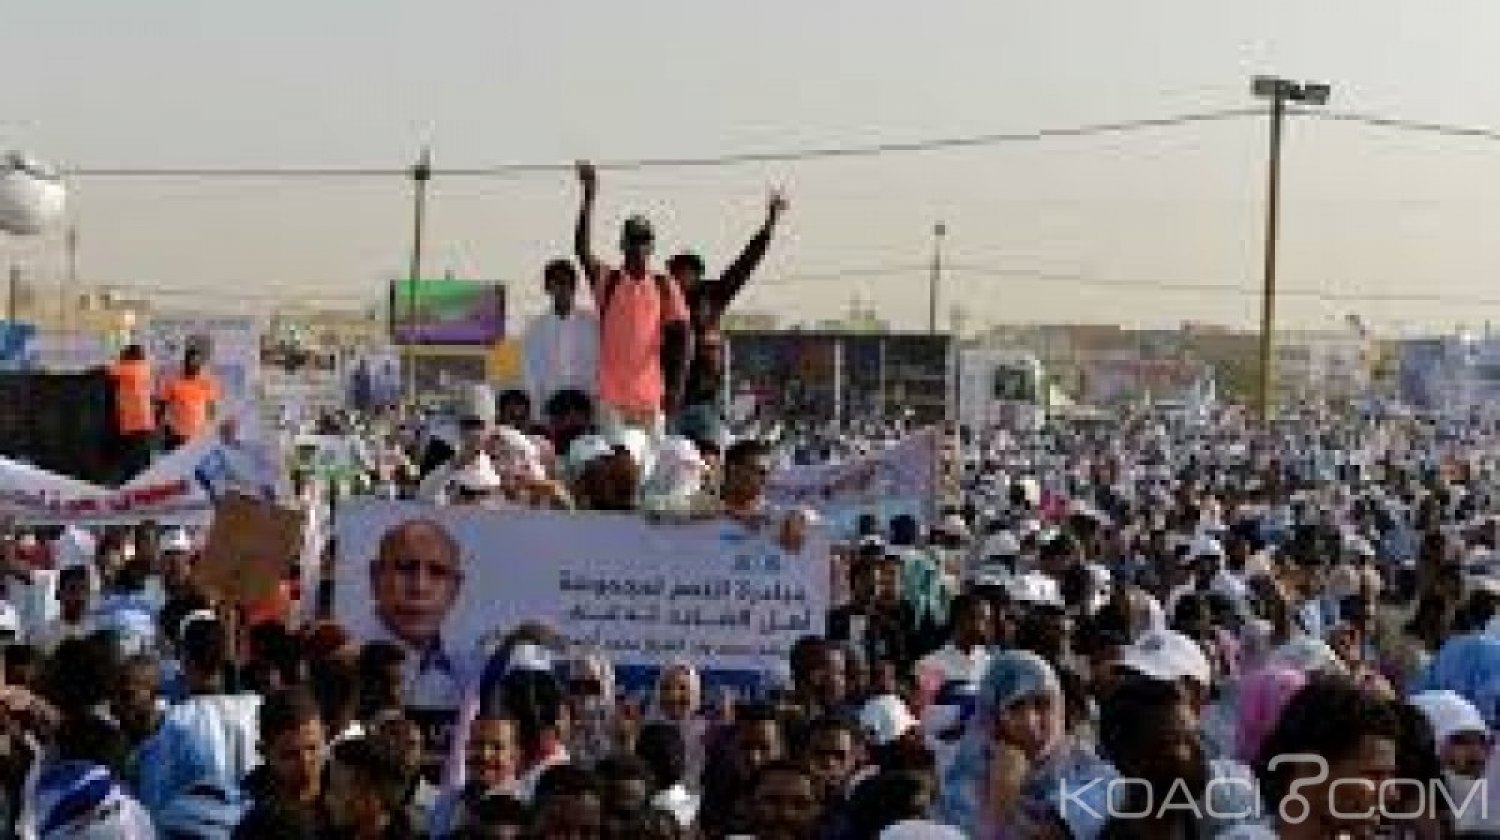 Mauritanie: Des partisans de l'opposition libérés, le nouveau Président Ghazouani quitte le pays